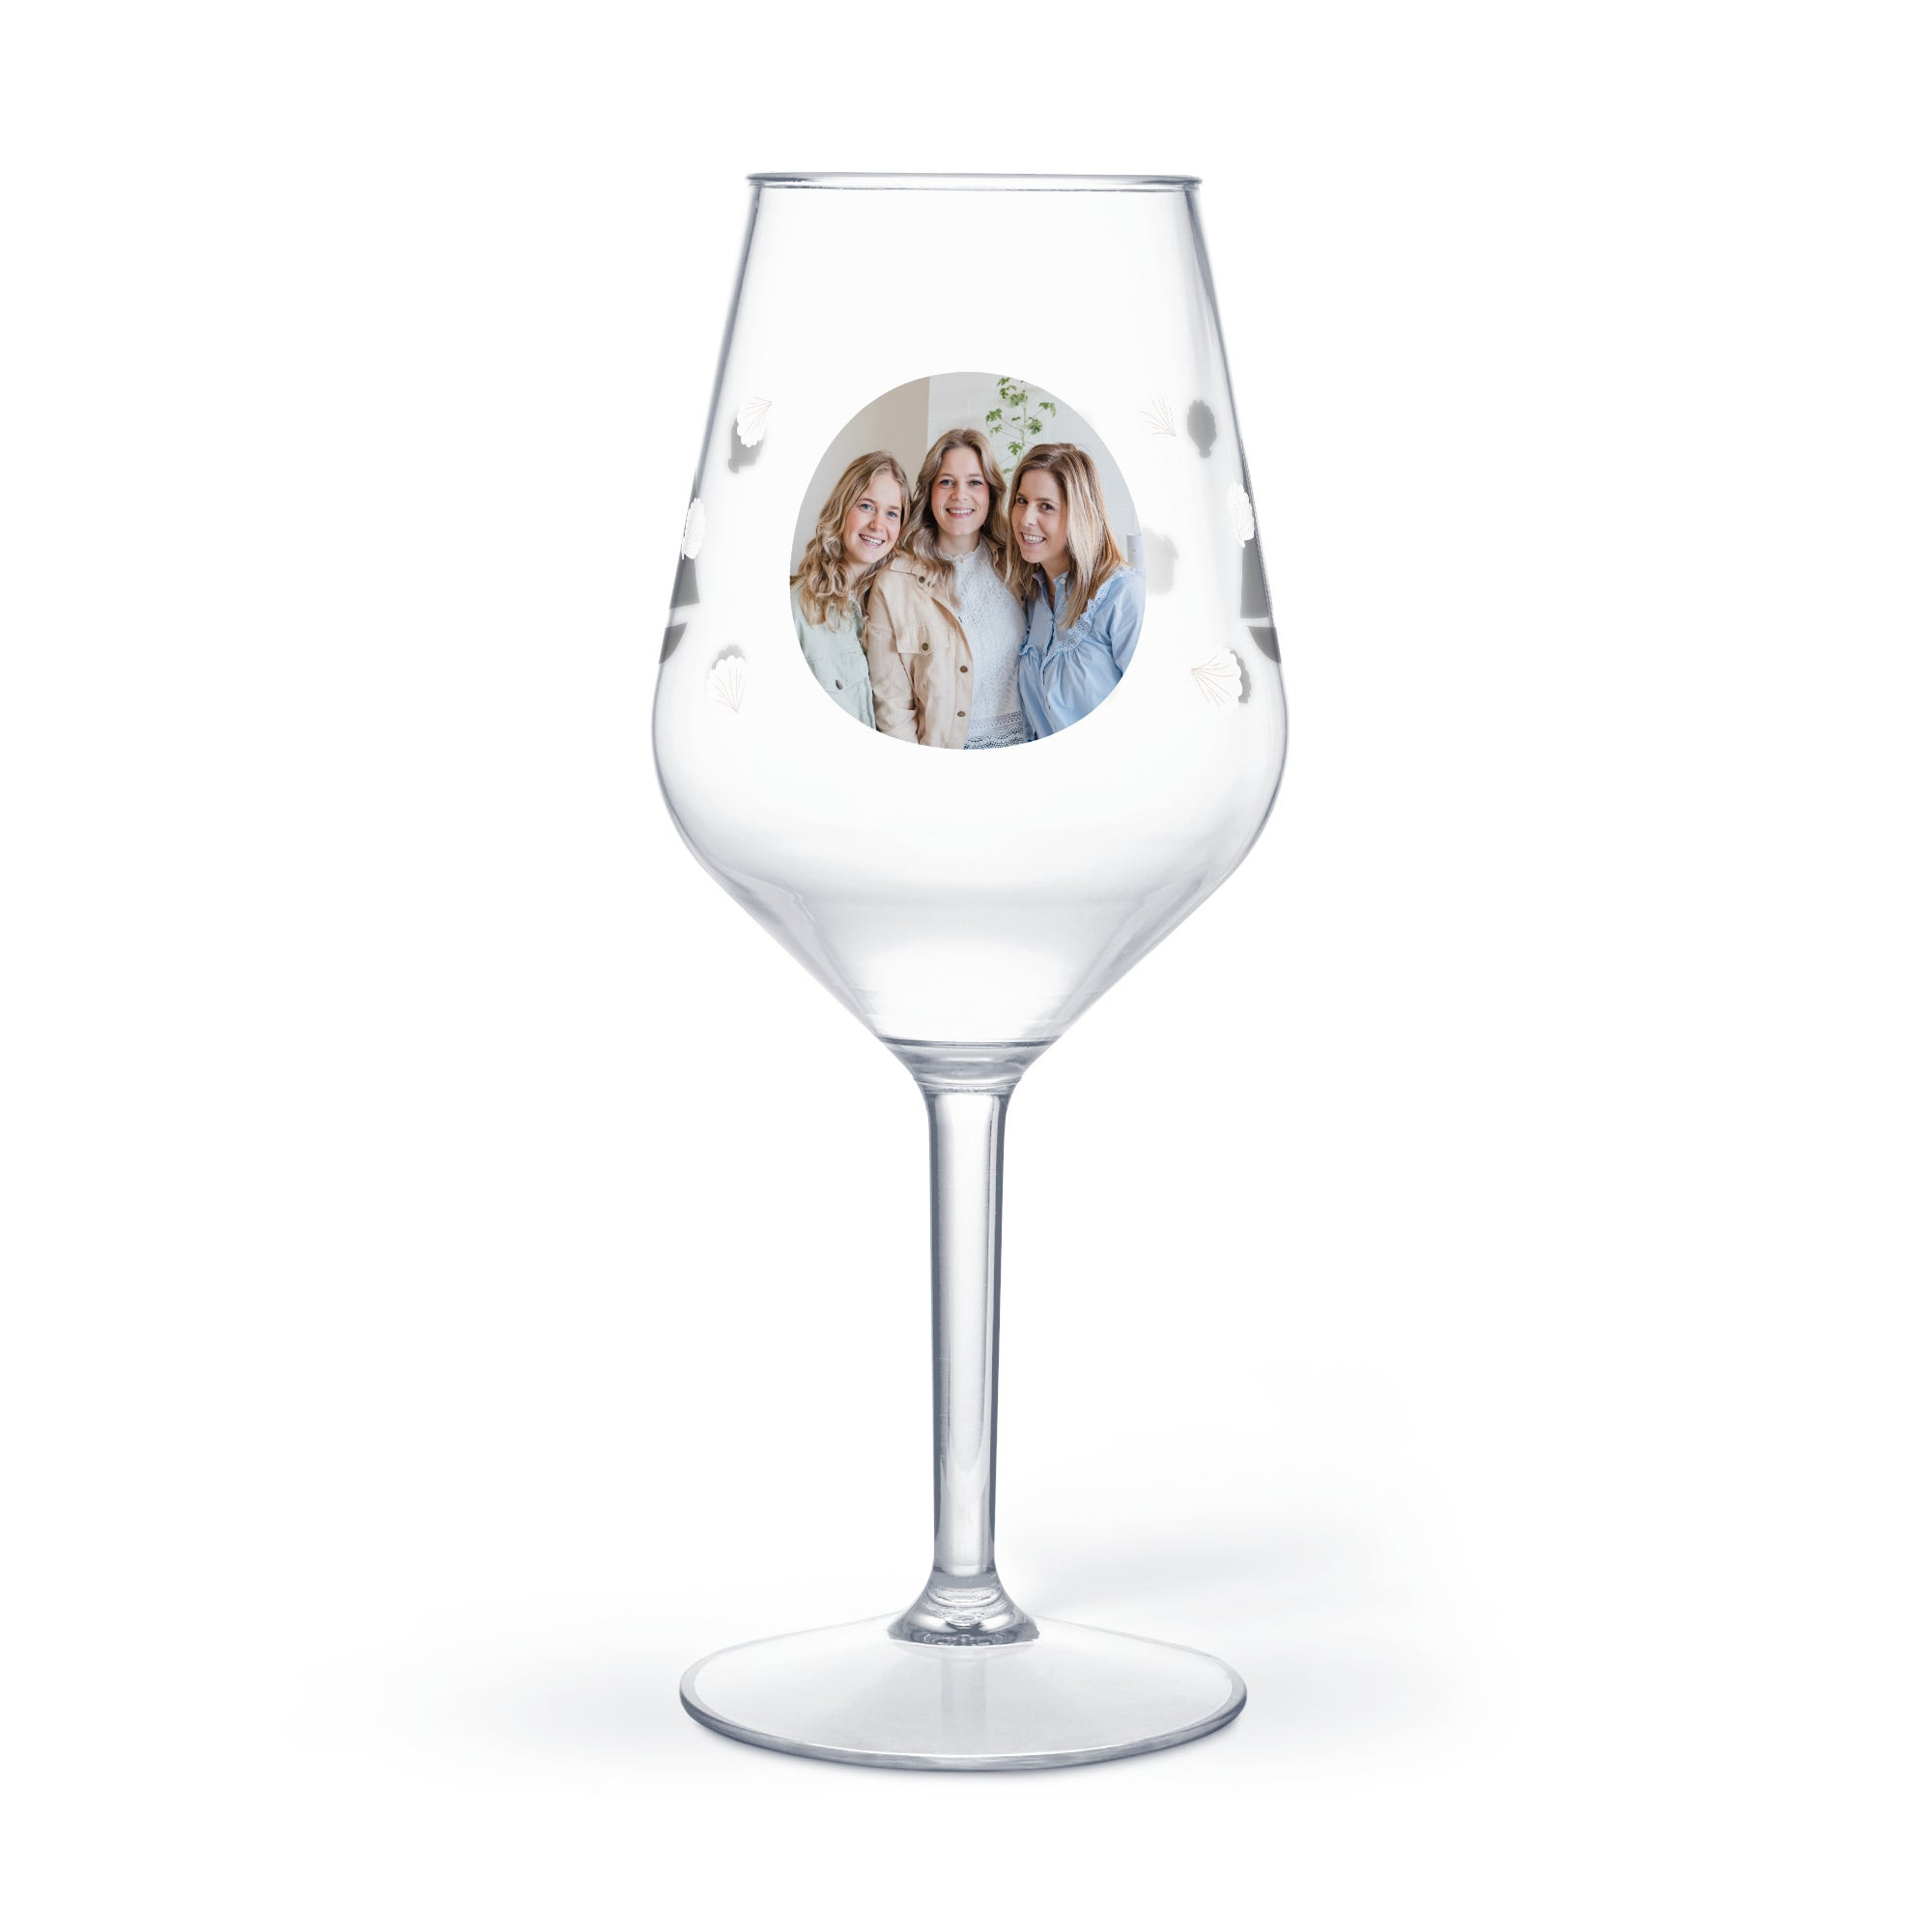 Wijnglas bedrukken - Kunststof - Mydrinkglass